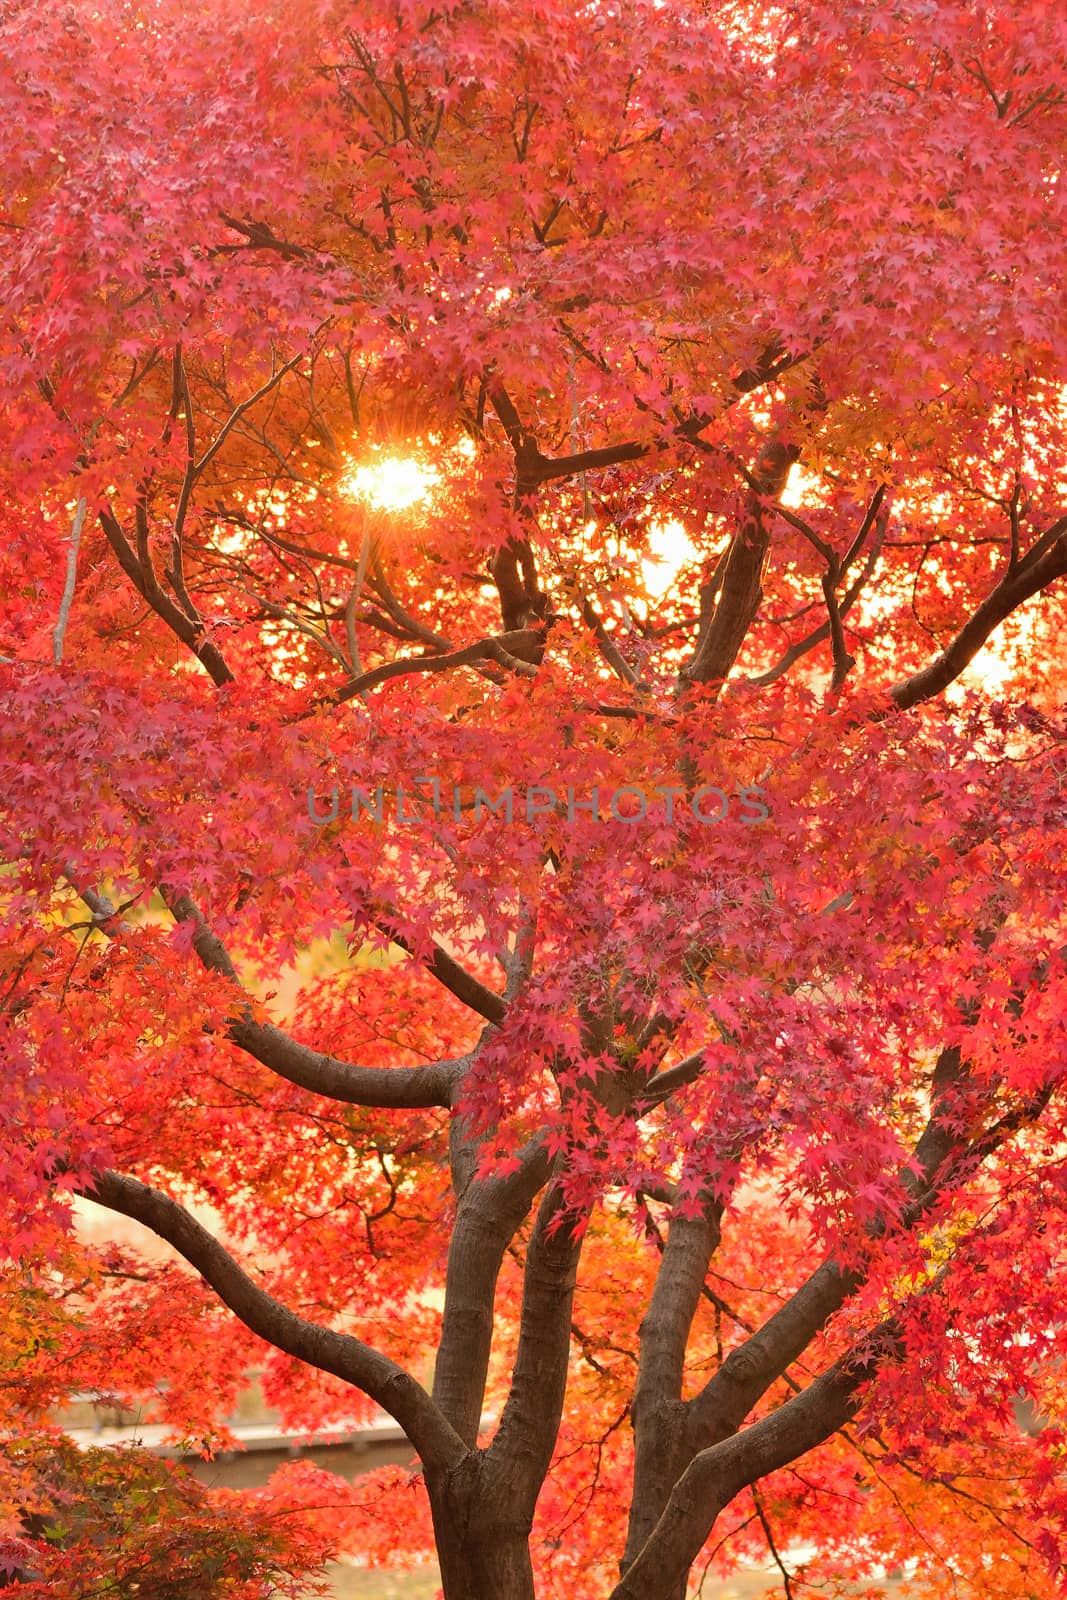 Landscape of Japanese Autumn Maple leaves with sunshine by shubhashish